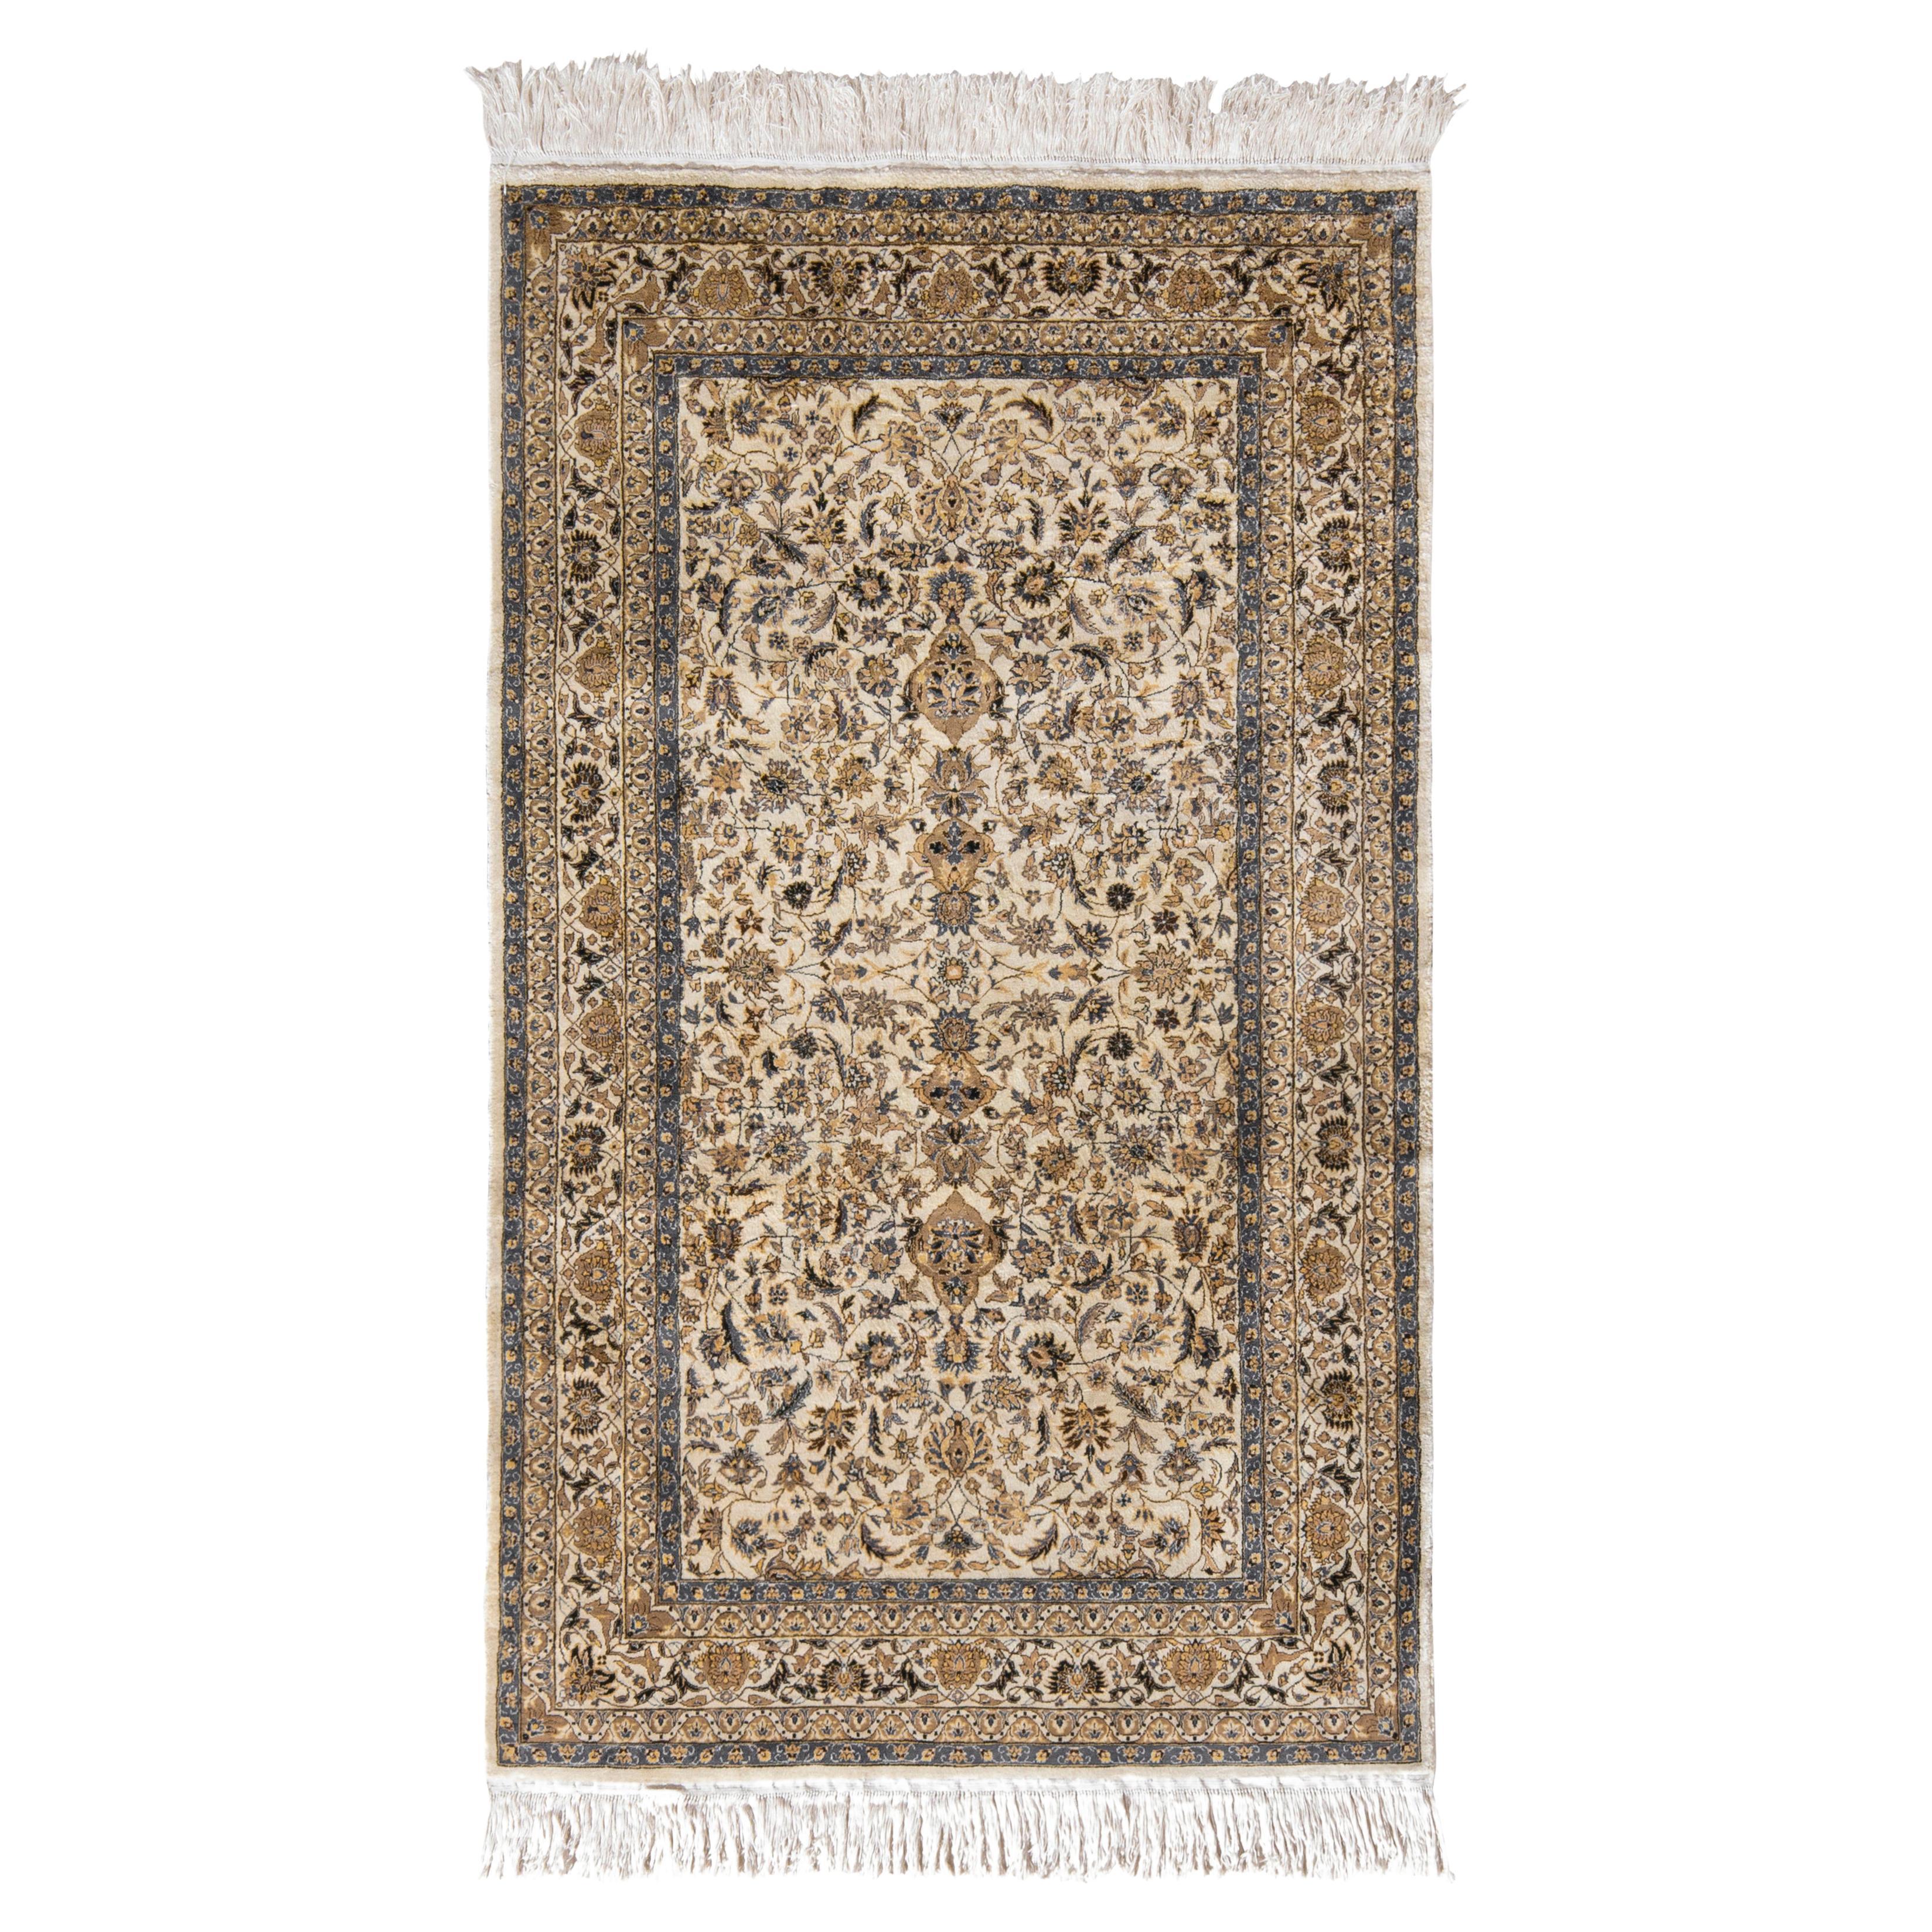 Handgeknüpfter persischer Vintage-Teppich in Beige-Braun mit Blumenmuster von Teppich & Kelim